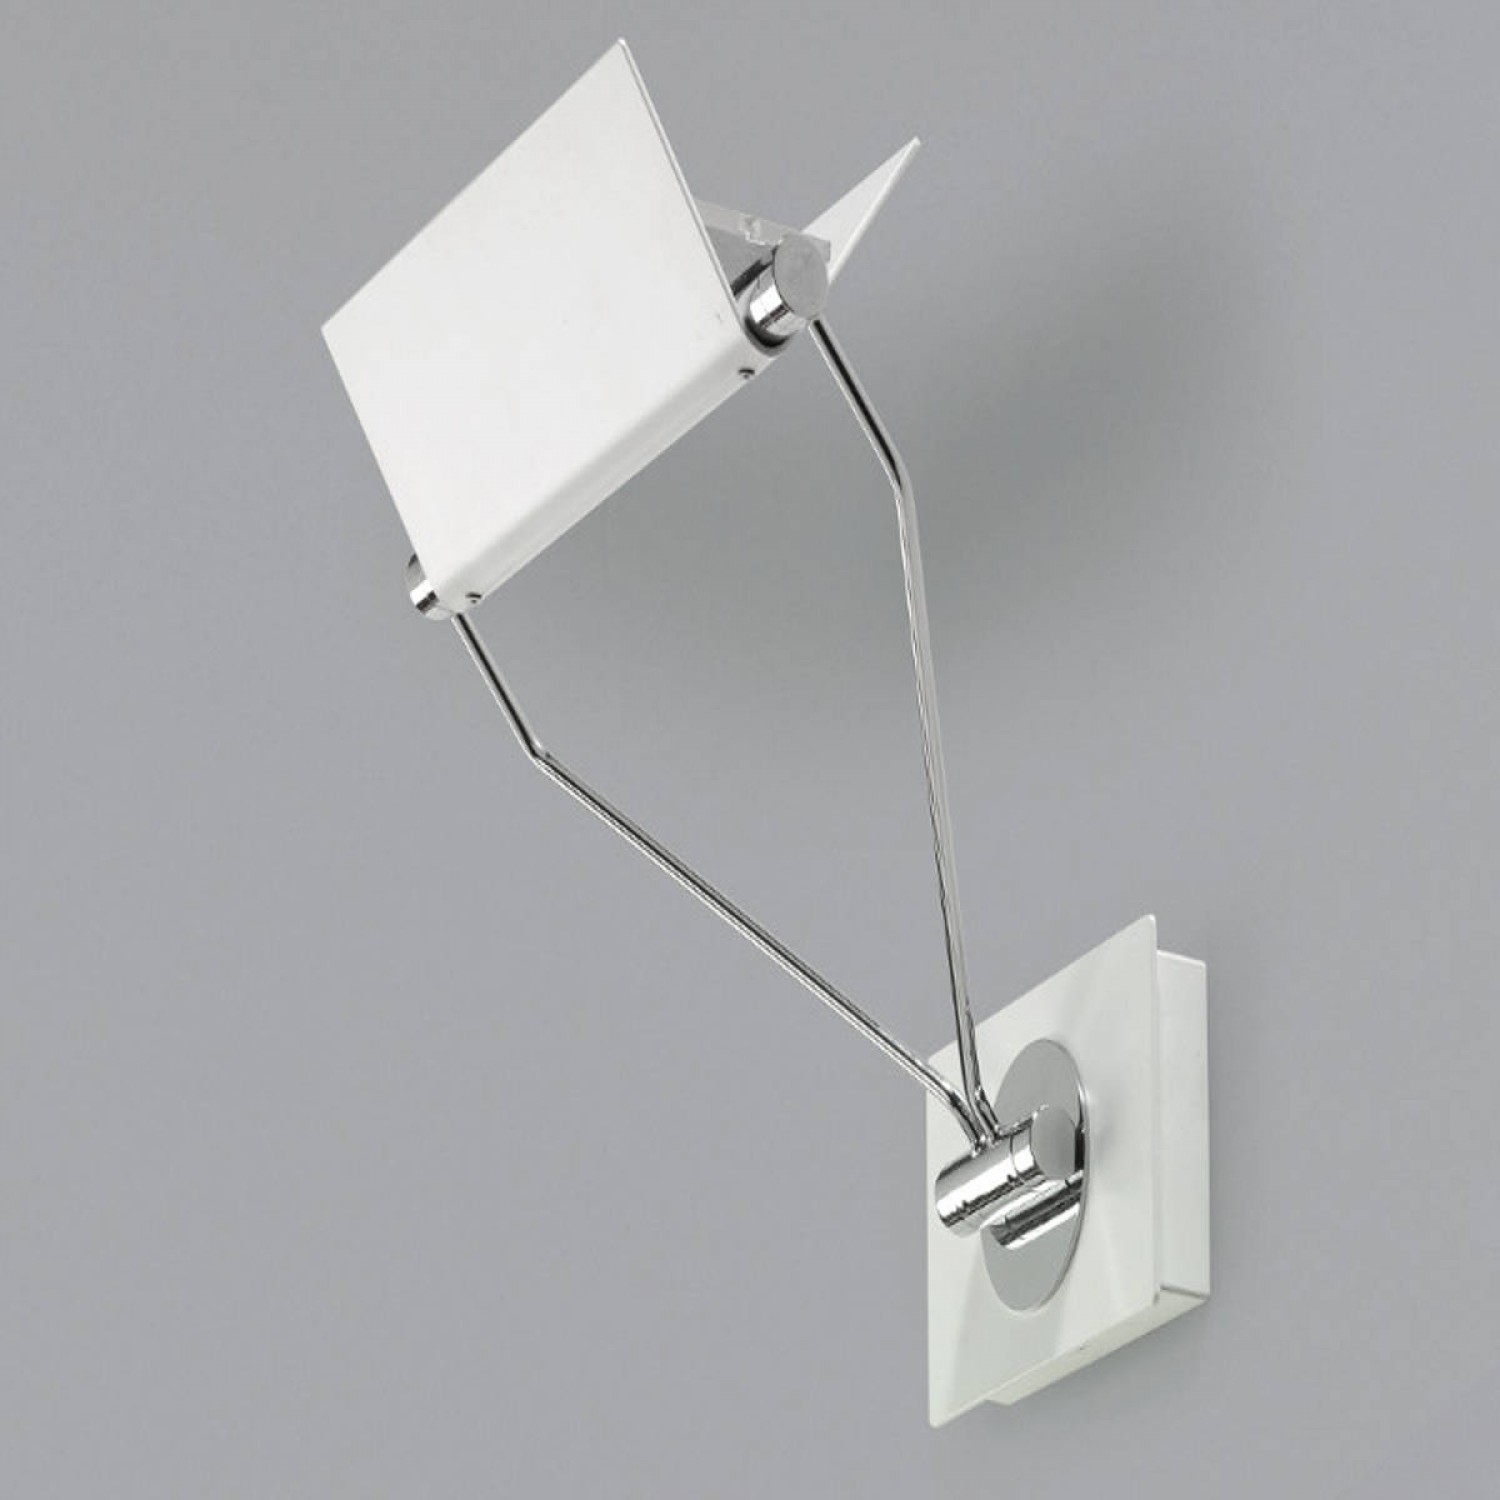 Lampada da parete in metallo verniciato con particolari in cromo, dal  design essenziale,6 luci 4.2W a LED ( 2880Lm, 3000°K ) Pierlux Illuminazione